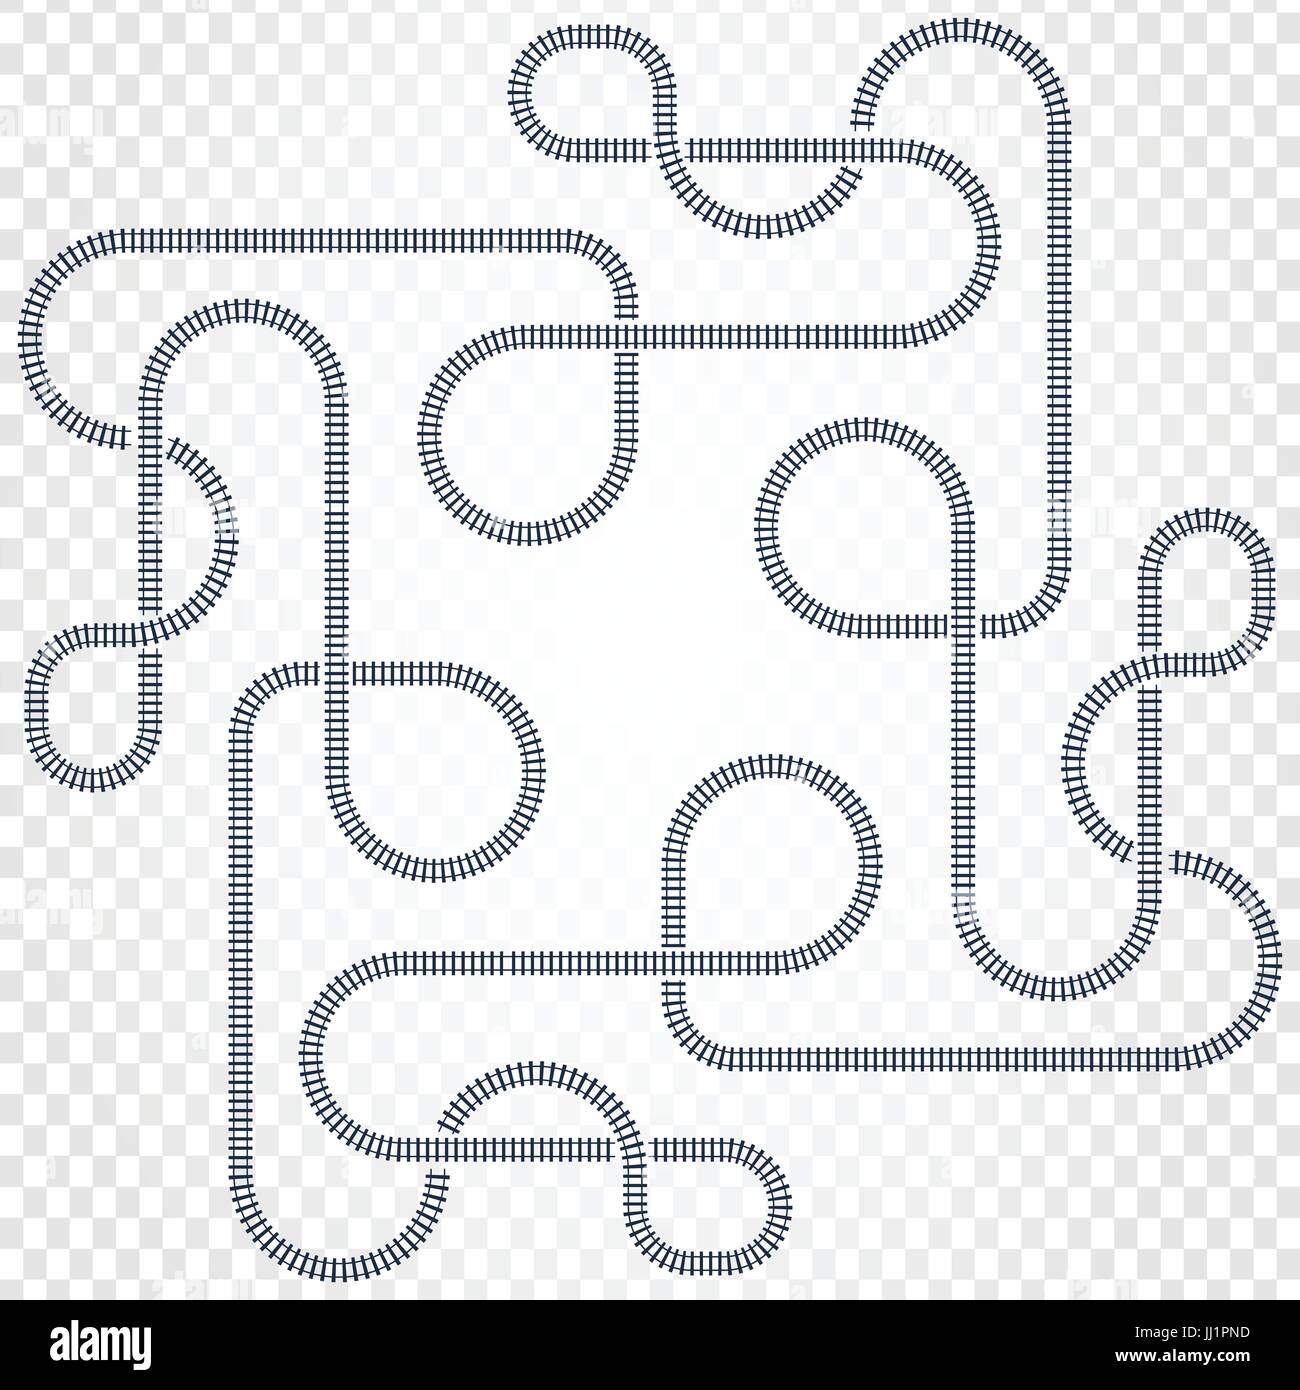 Ligne de chemin de fer, labyrinthe et nœuds. La carte du tramway aux trains avec tours et ponts vector illustration Illustration de Vecteur